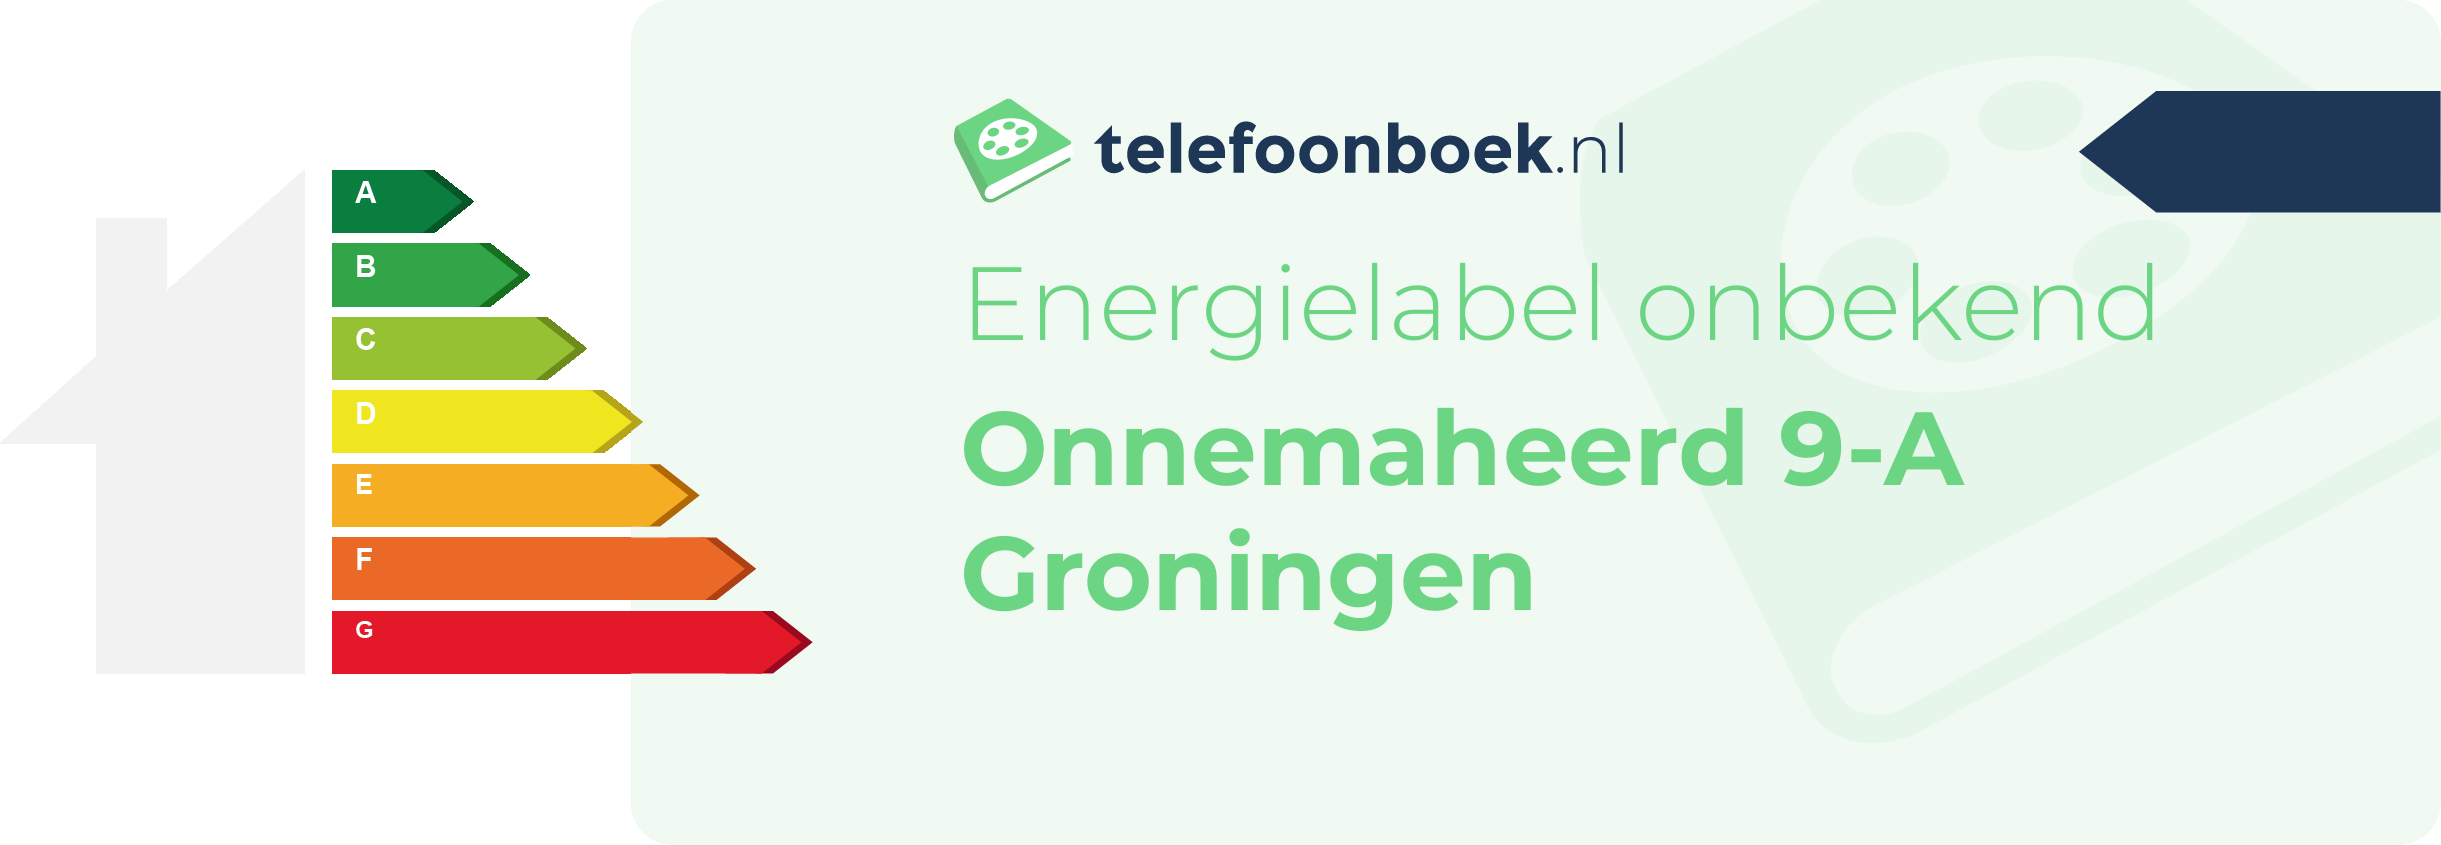 Energielabel Onnemaheerd 9-A Groningen